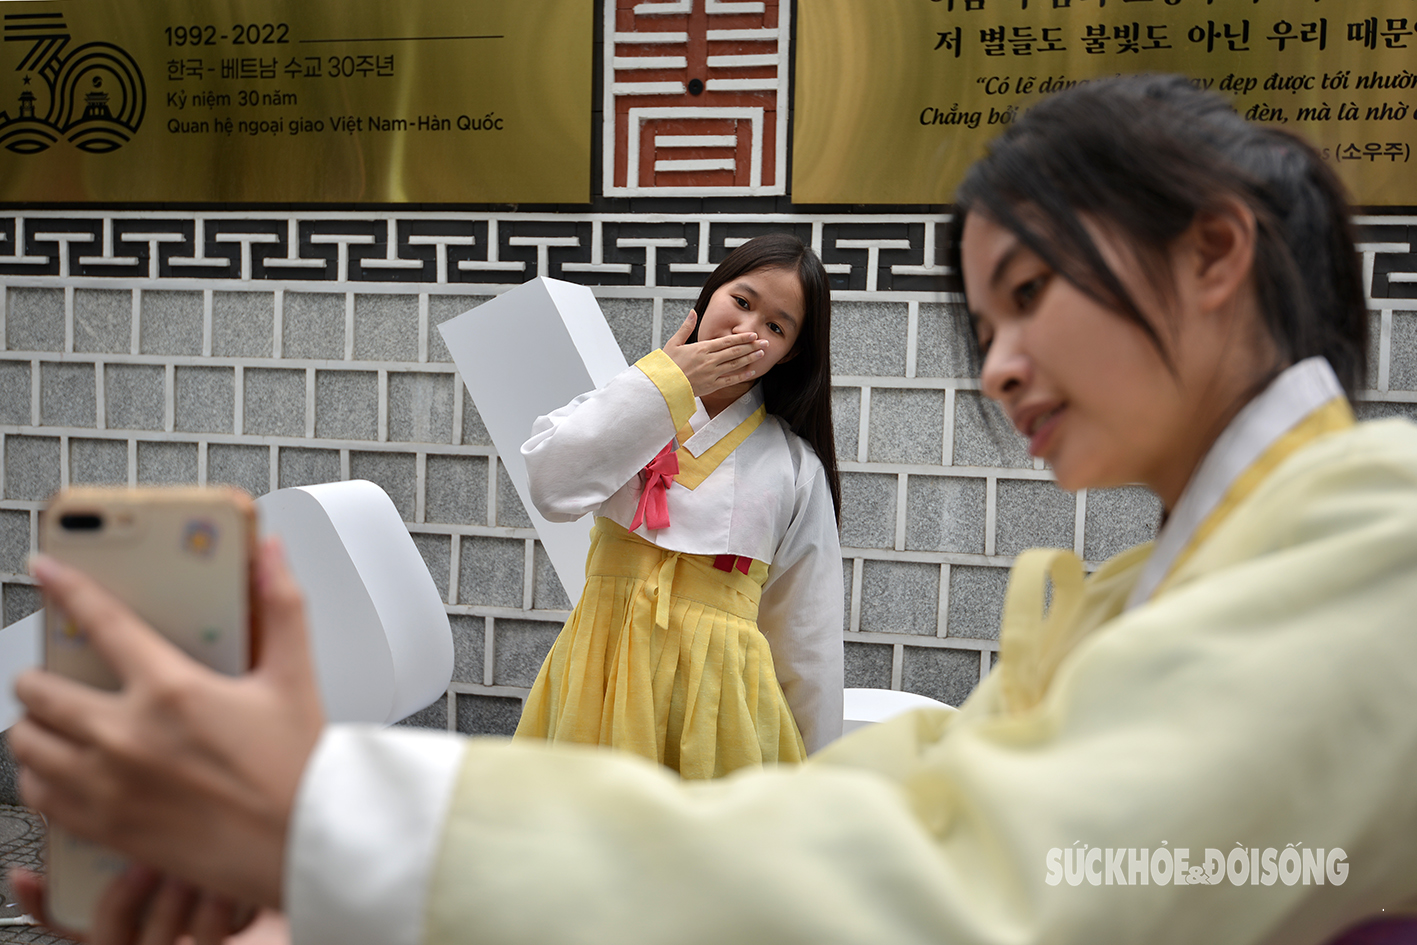 Giới trẻ xúng xính trong trang phục Hàn Quốc check-in tại con đường ‘hot’ nhất Hà Nội- Ảnh 3.